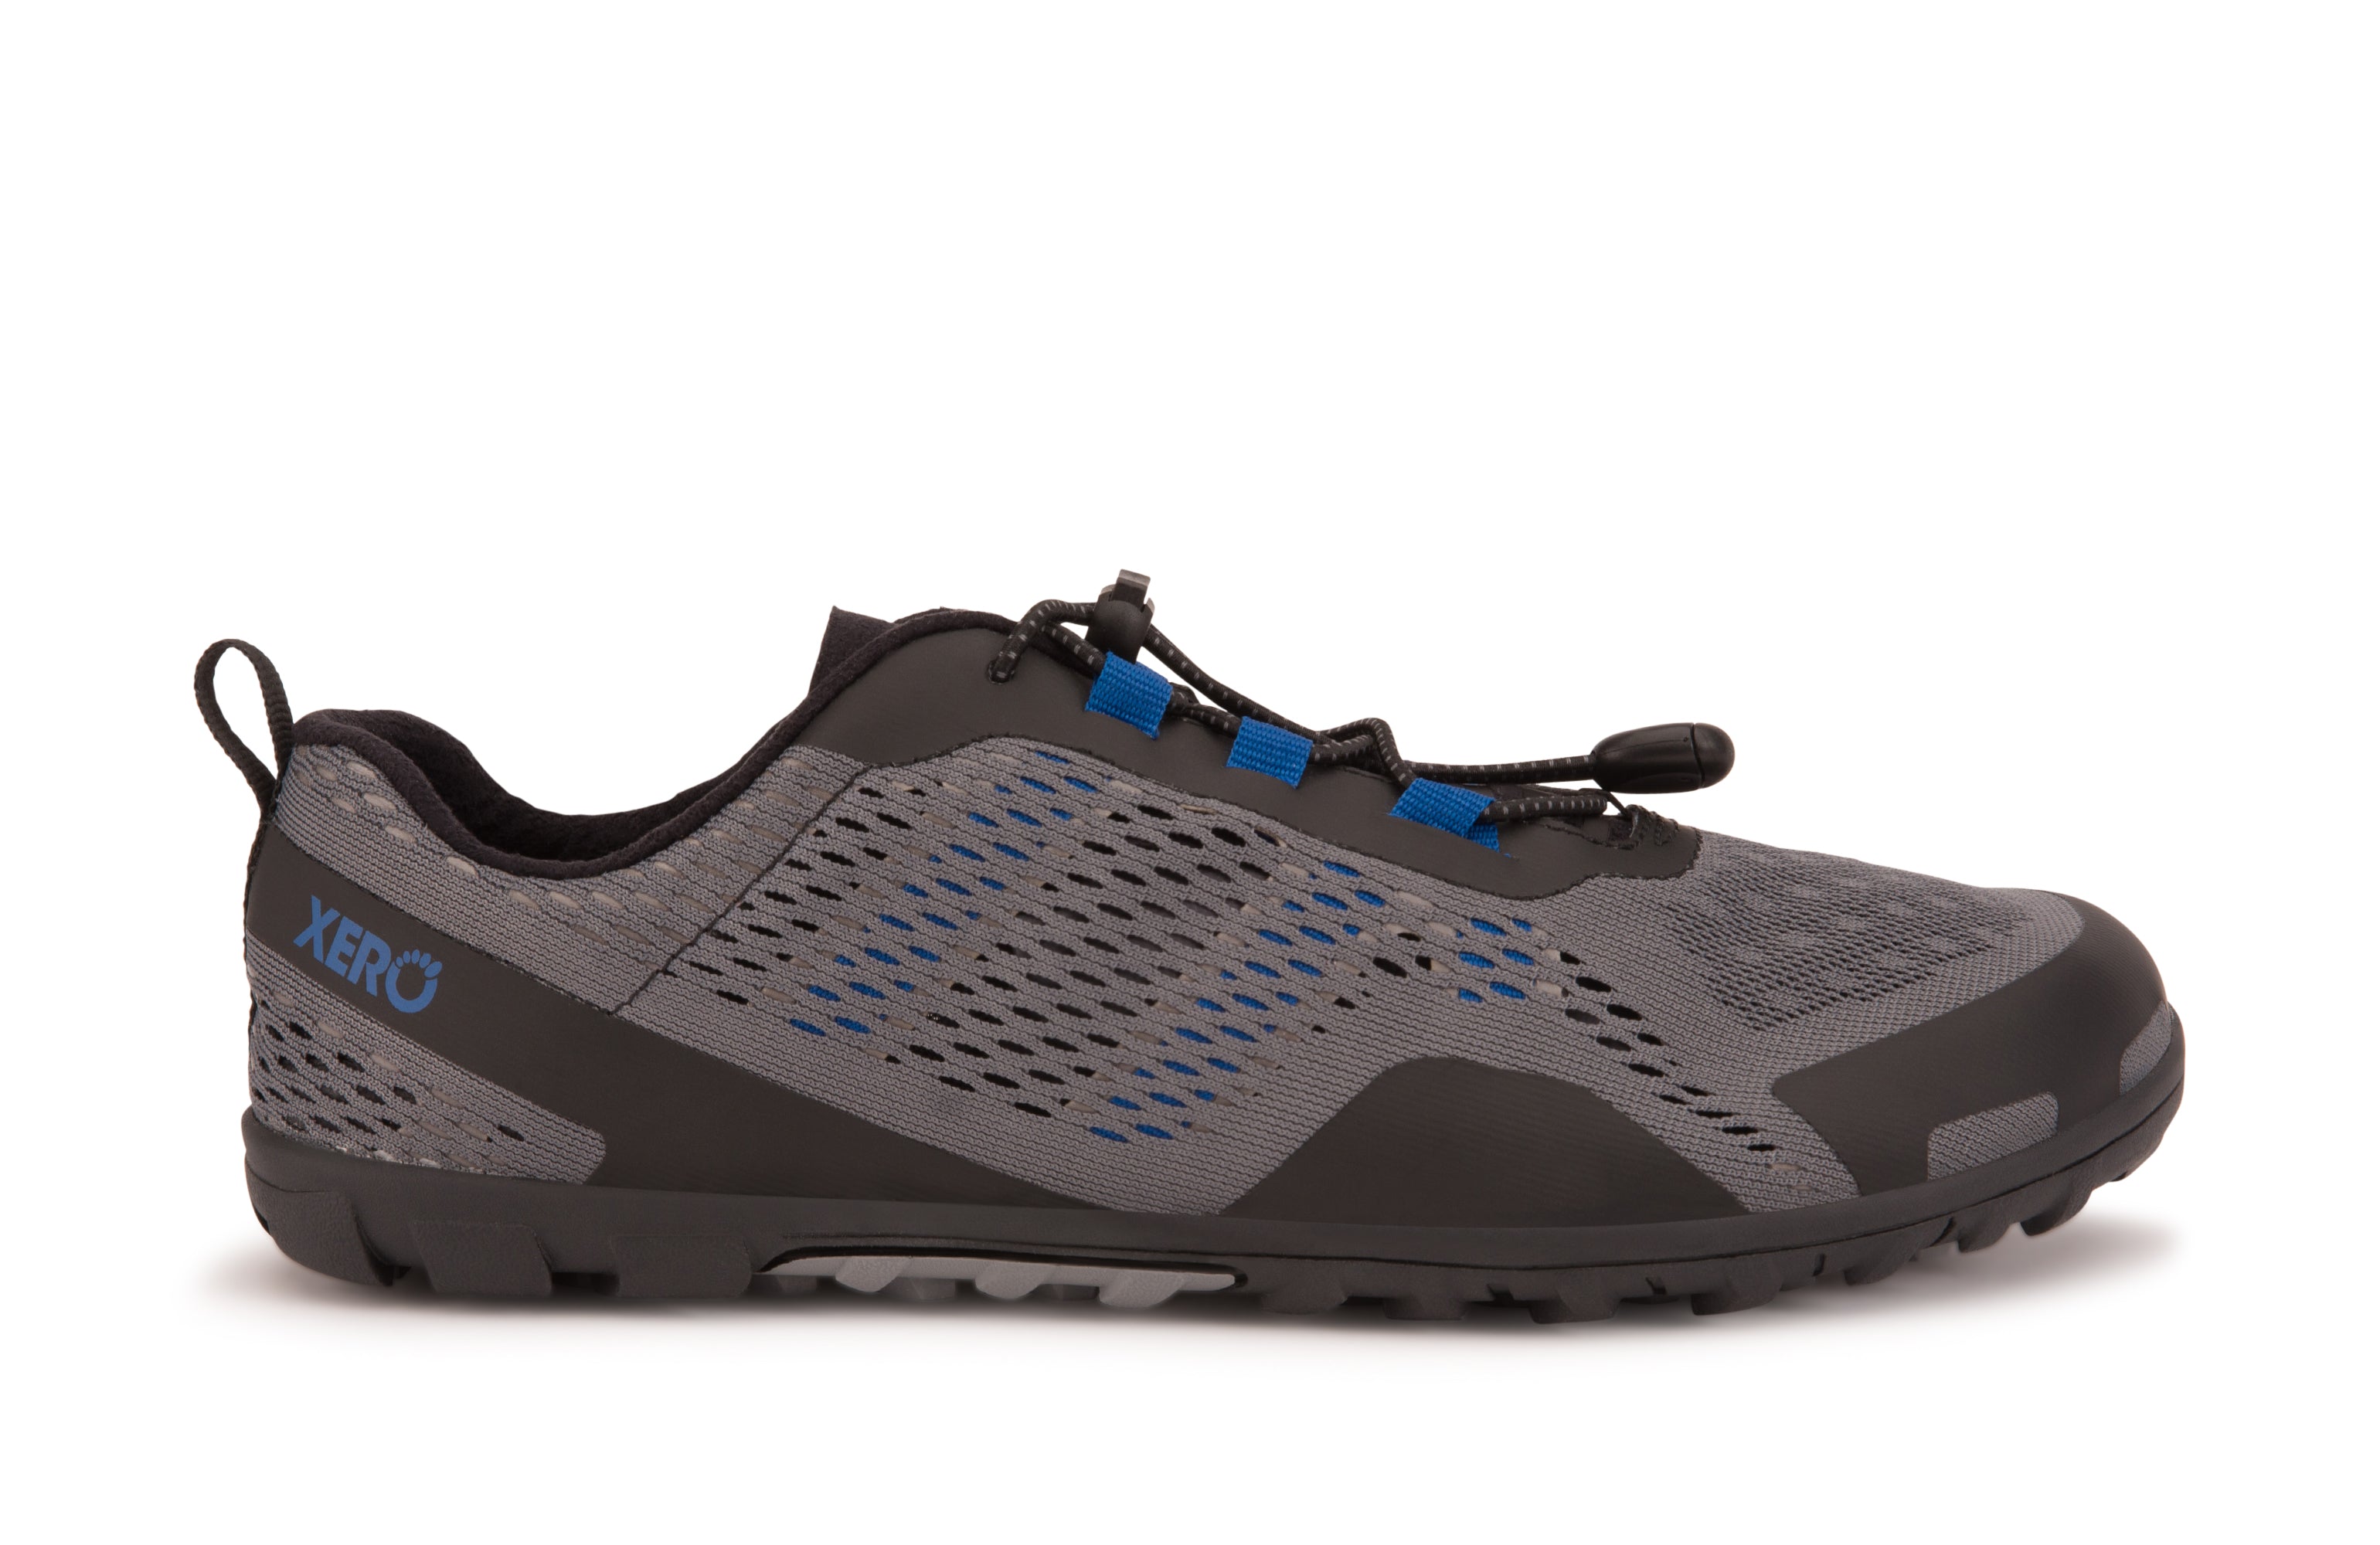 Xero Shoes Aqua X Sport barfods vand træningssko til mænd i farven steel gray / blue, yderside